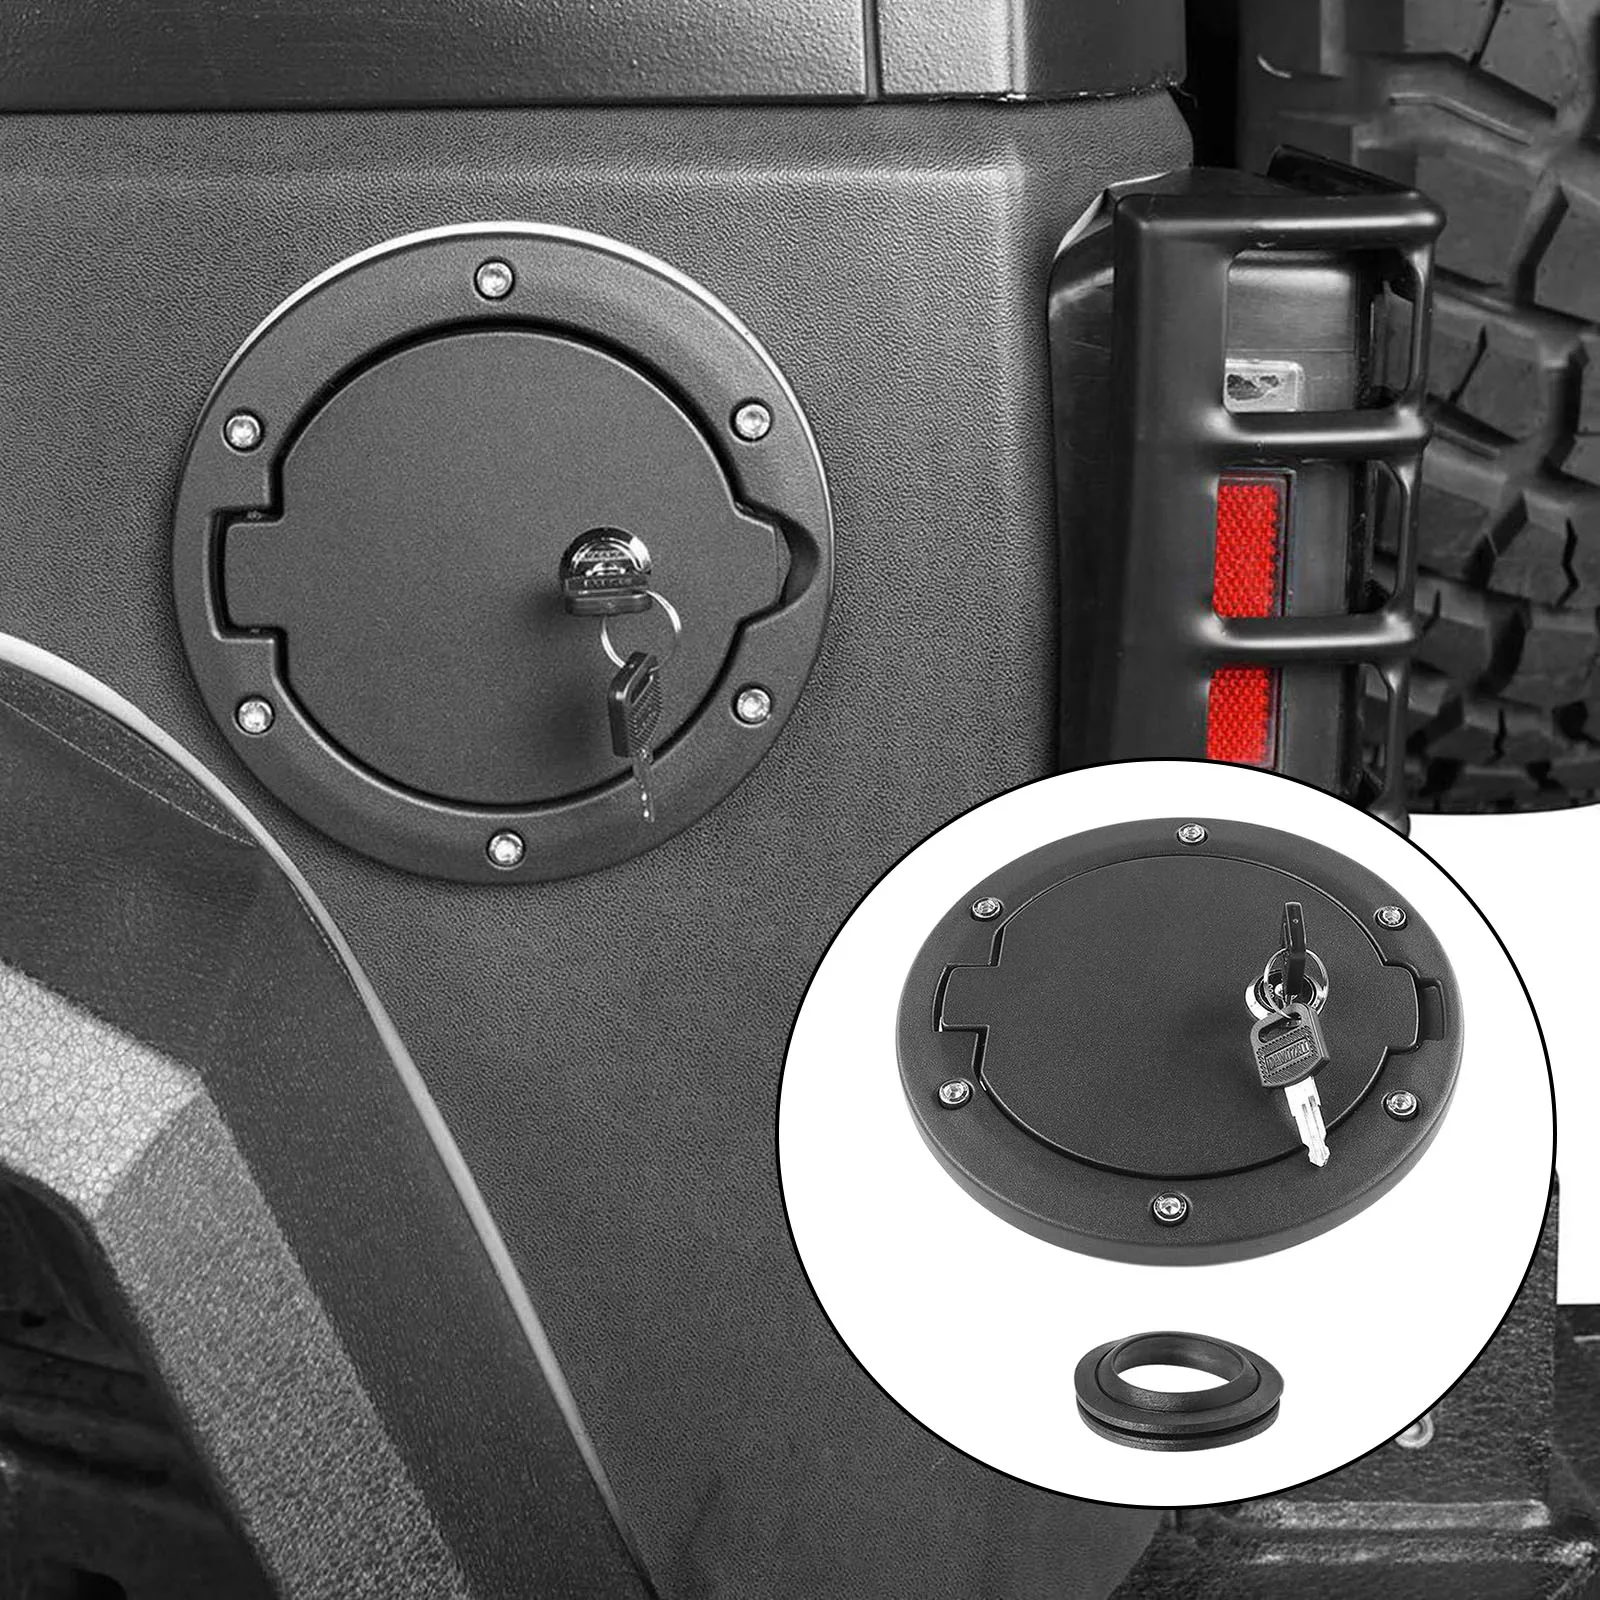 Locking Gas Fuel Filler Door Cover for Wrangler JK Door,Gas Tank Door Cover Auto Accessories Black